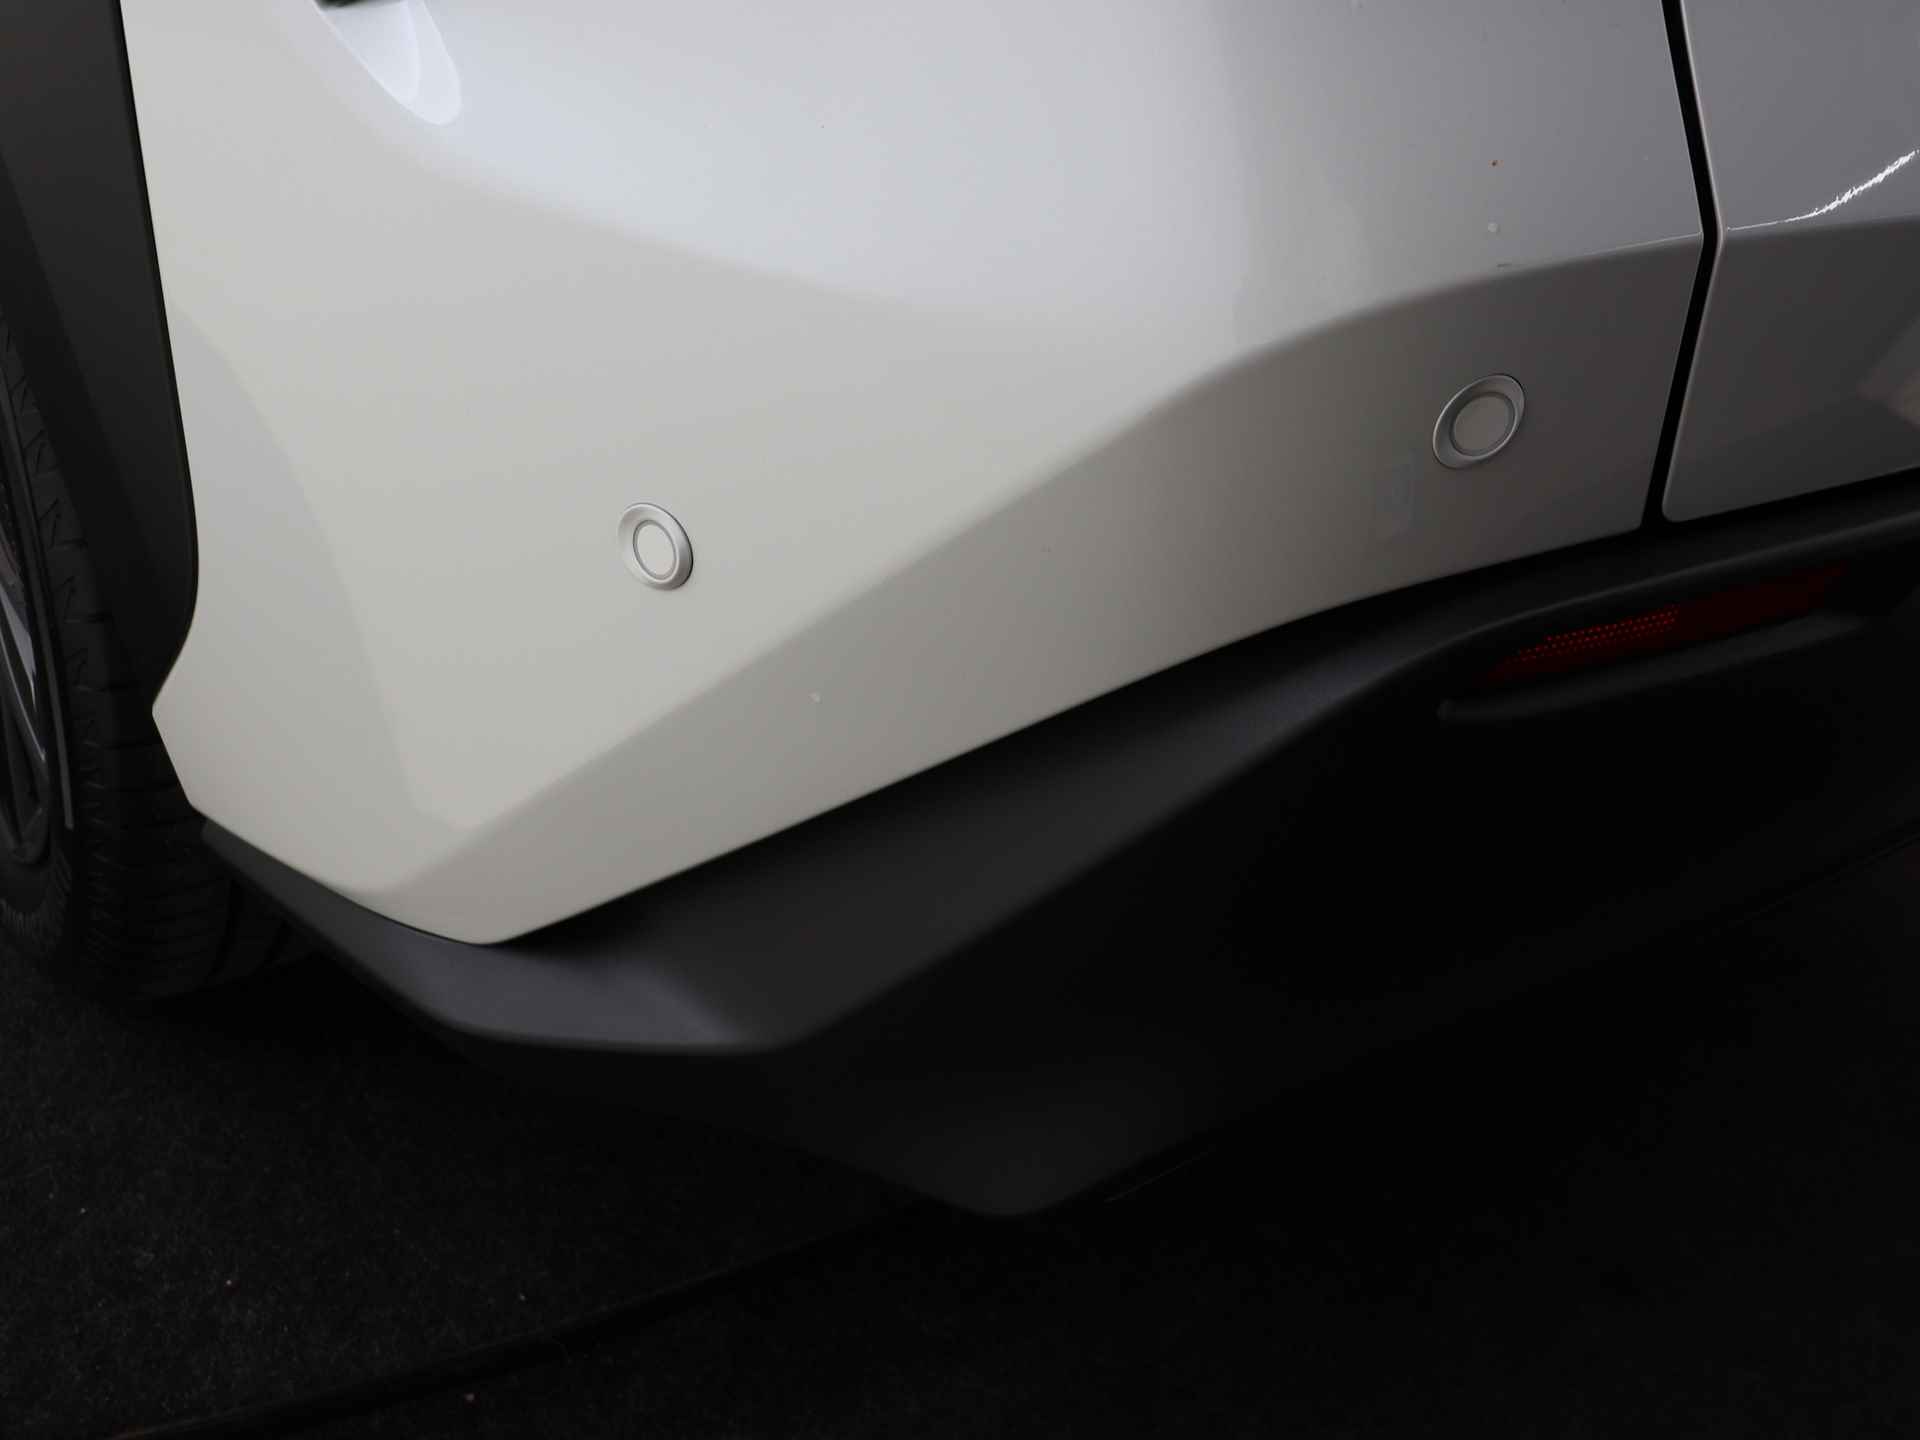 Toyota Bz4x Launch Edition Premium Bi-Tone uitvoering | Navigatie | Stoel&stuur verwarming | My T app | Panoramadak | Wegenbelasting vrij | Subsidie €2000,- aanvraag mogelijk. - 41/48